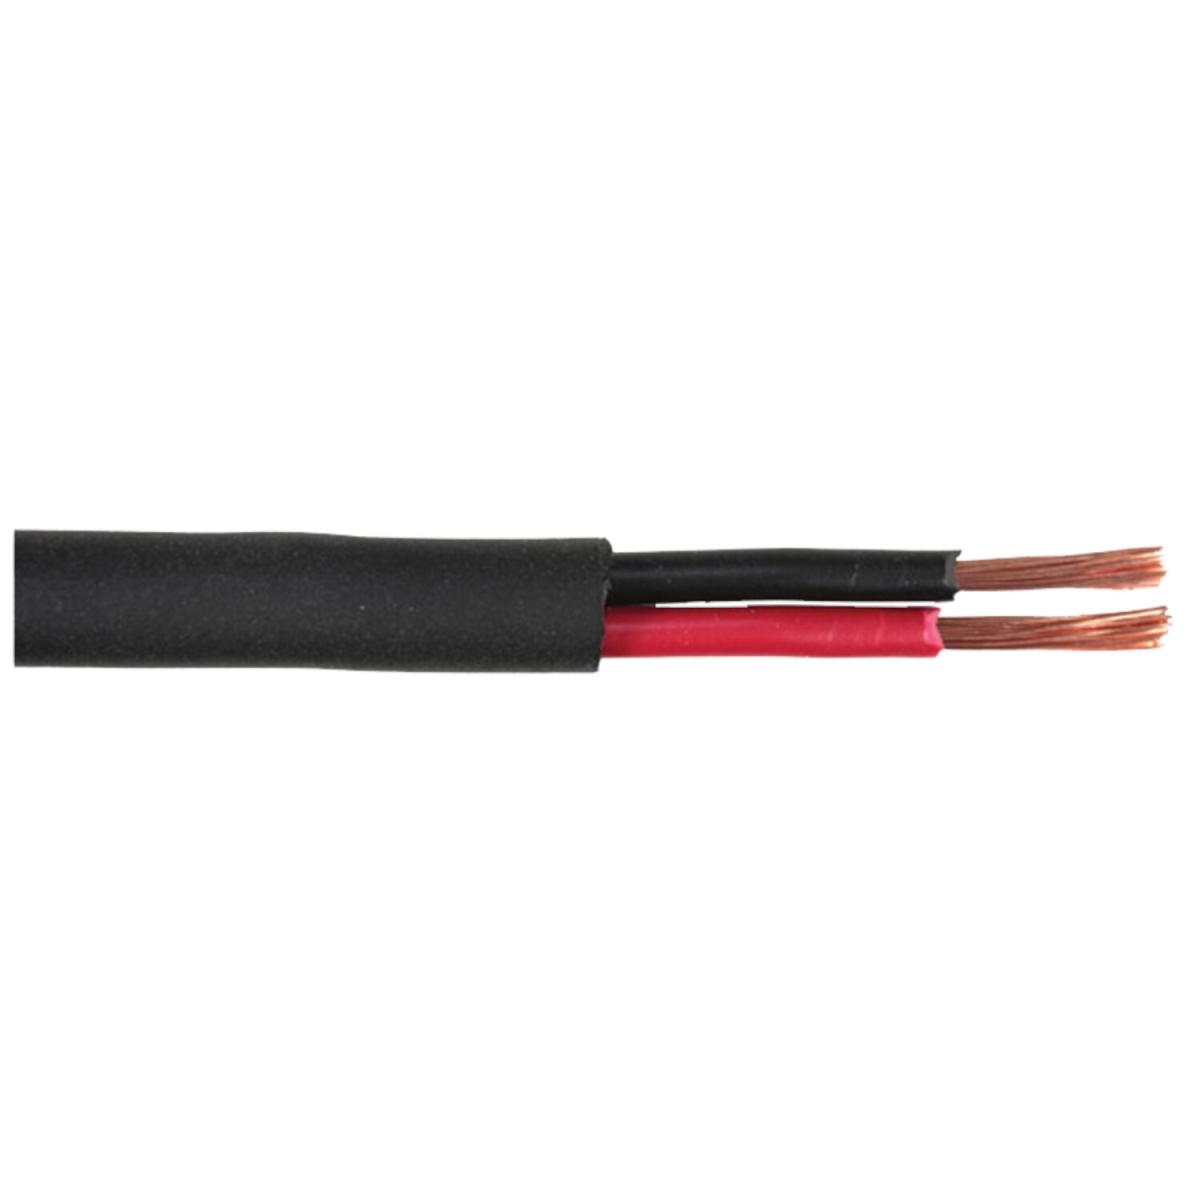 E44-Cable haut-parleur hifi haut de gamme 2 x 1.5mm2 l= 1m à 2,50